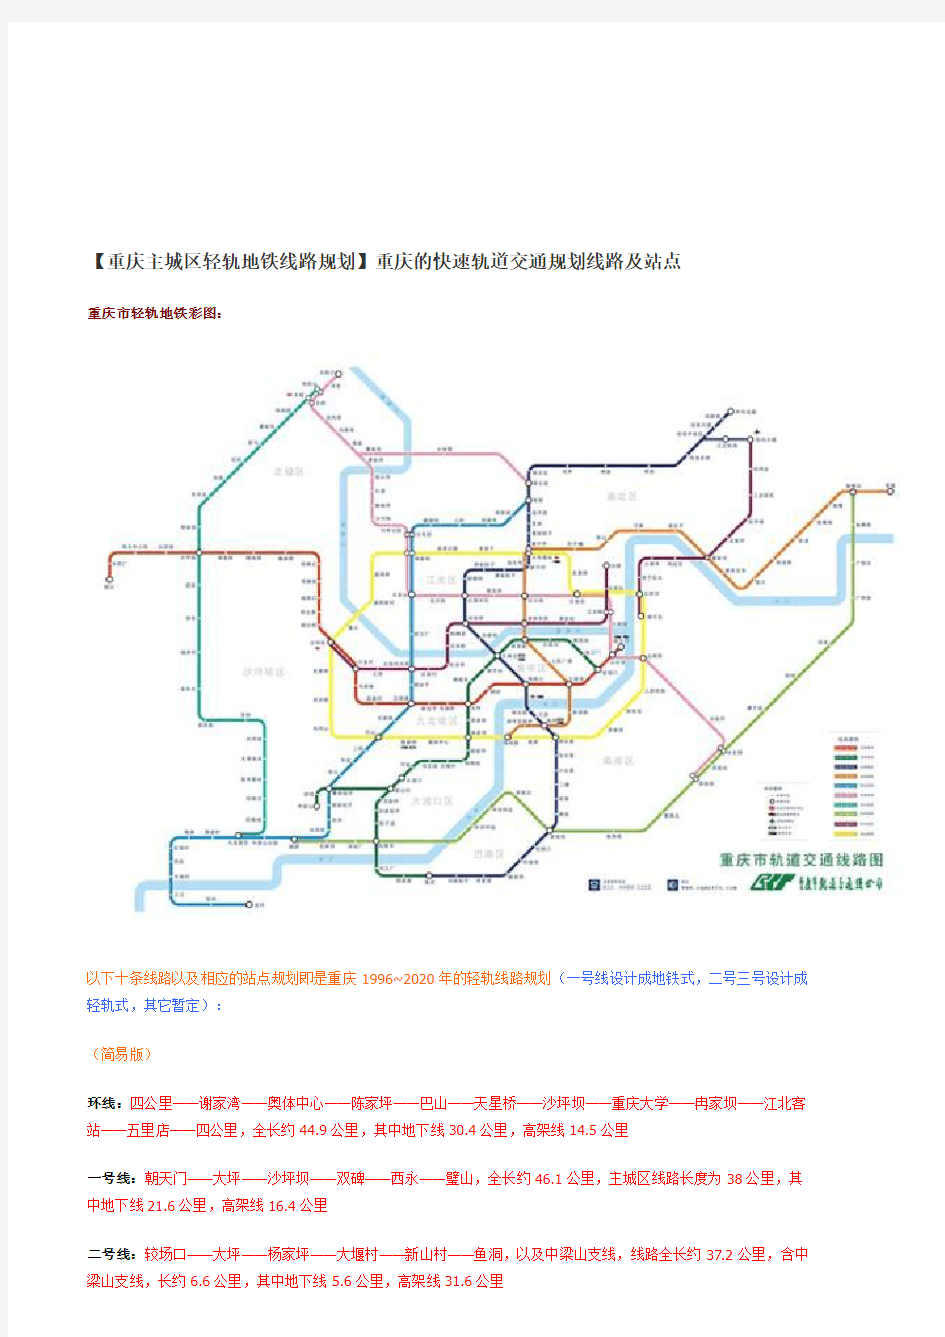 重庆轻轨规划线路图及站点